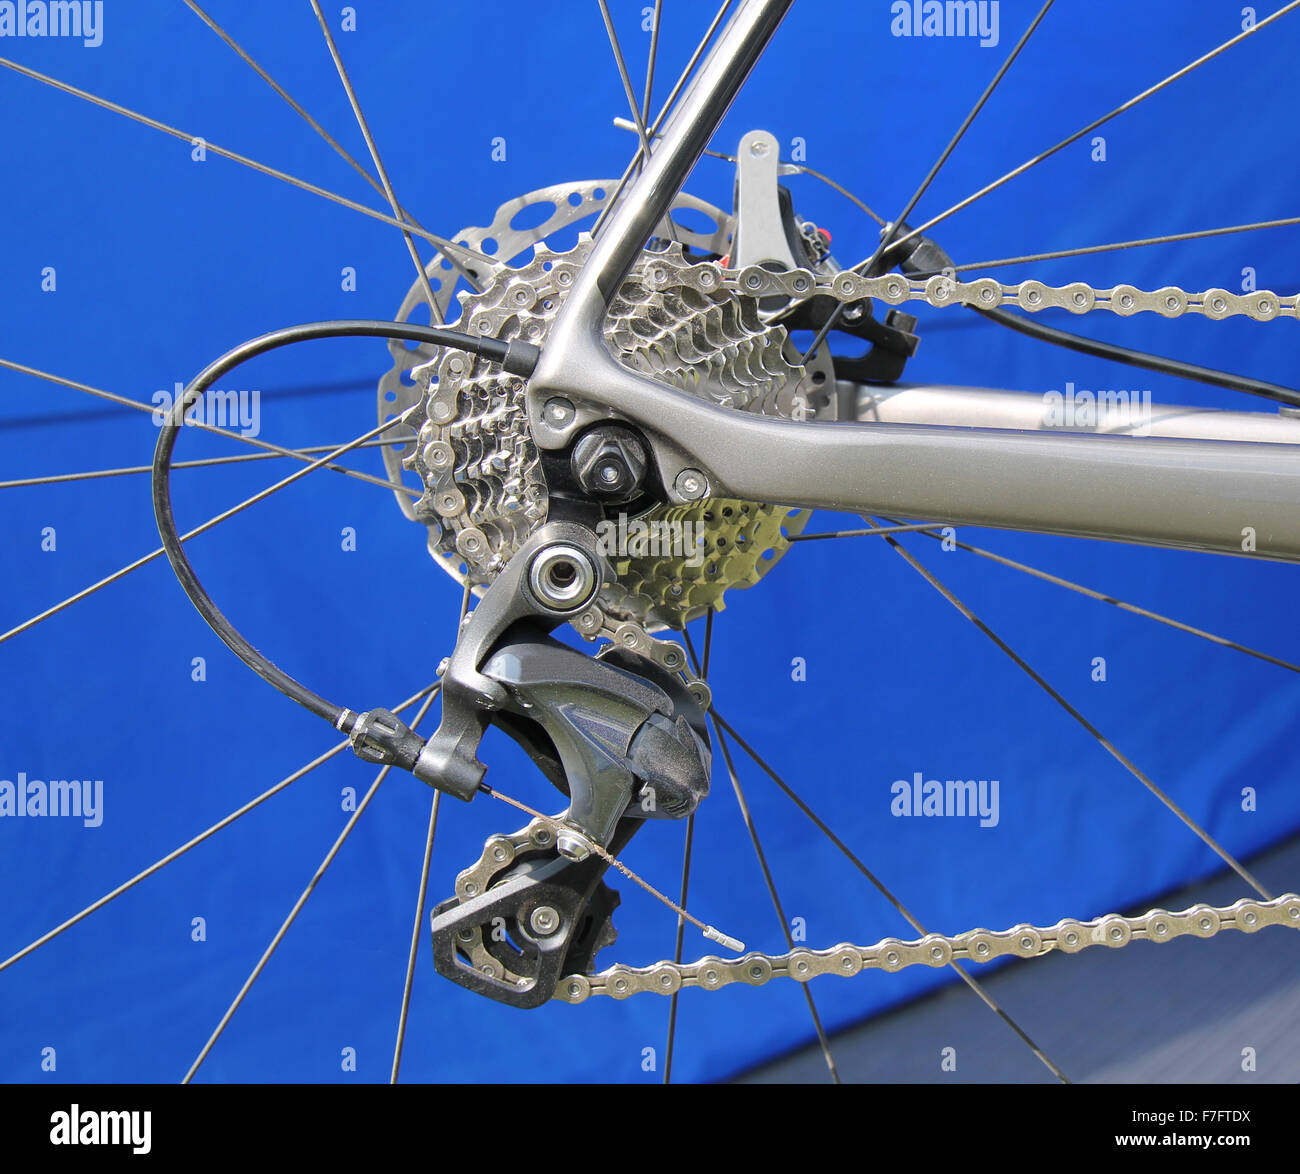 Ingranaggi della bici immagini e fotografie stock ad alta risoluzione -  Alamy